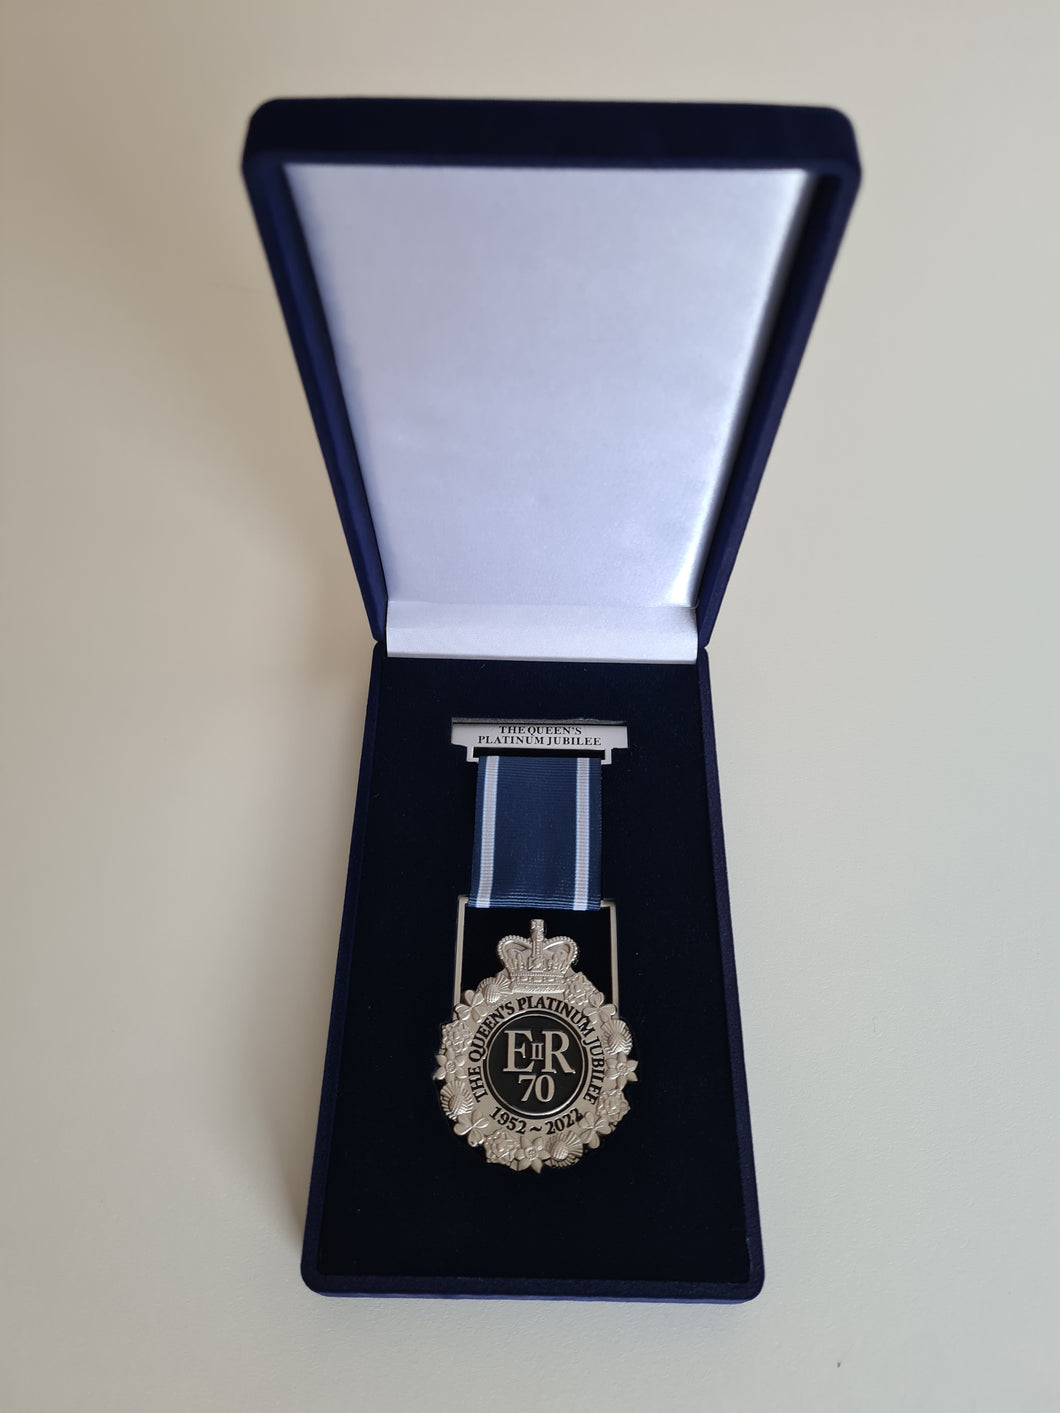 The Queen's Platinum Jubilee Commemorative Jewel